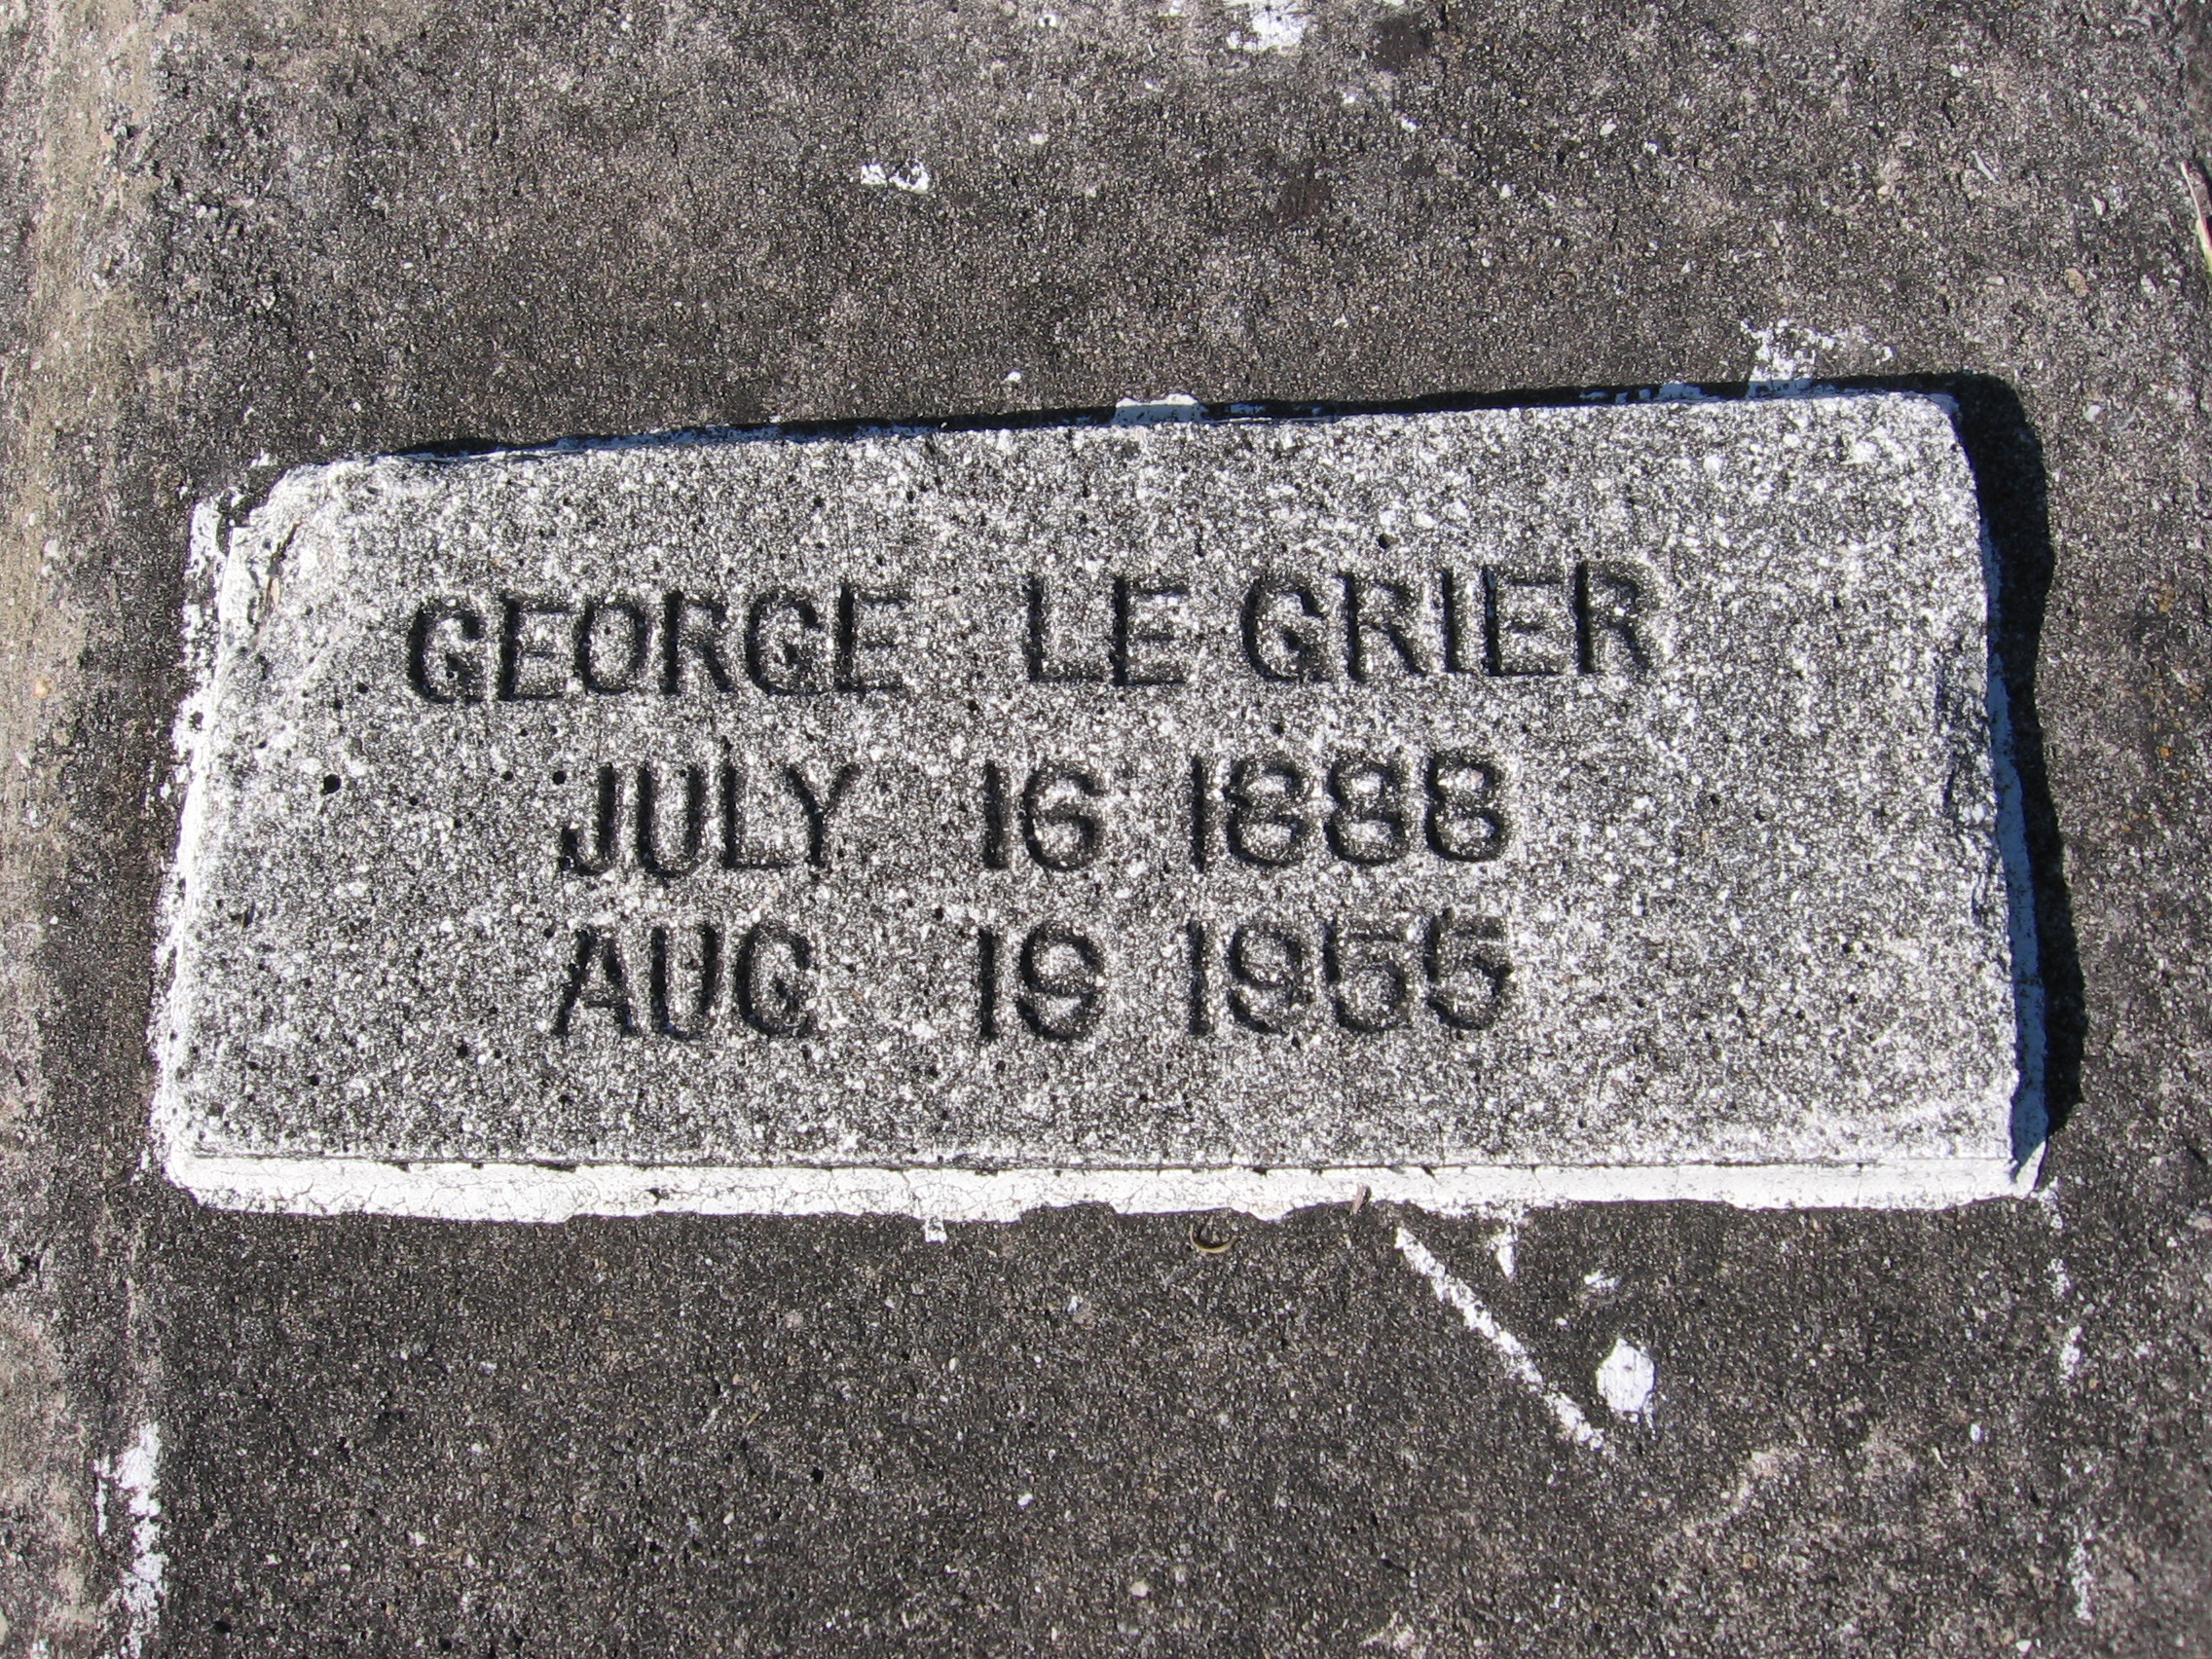 George Le Grier